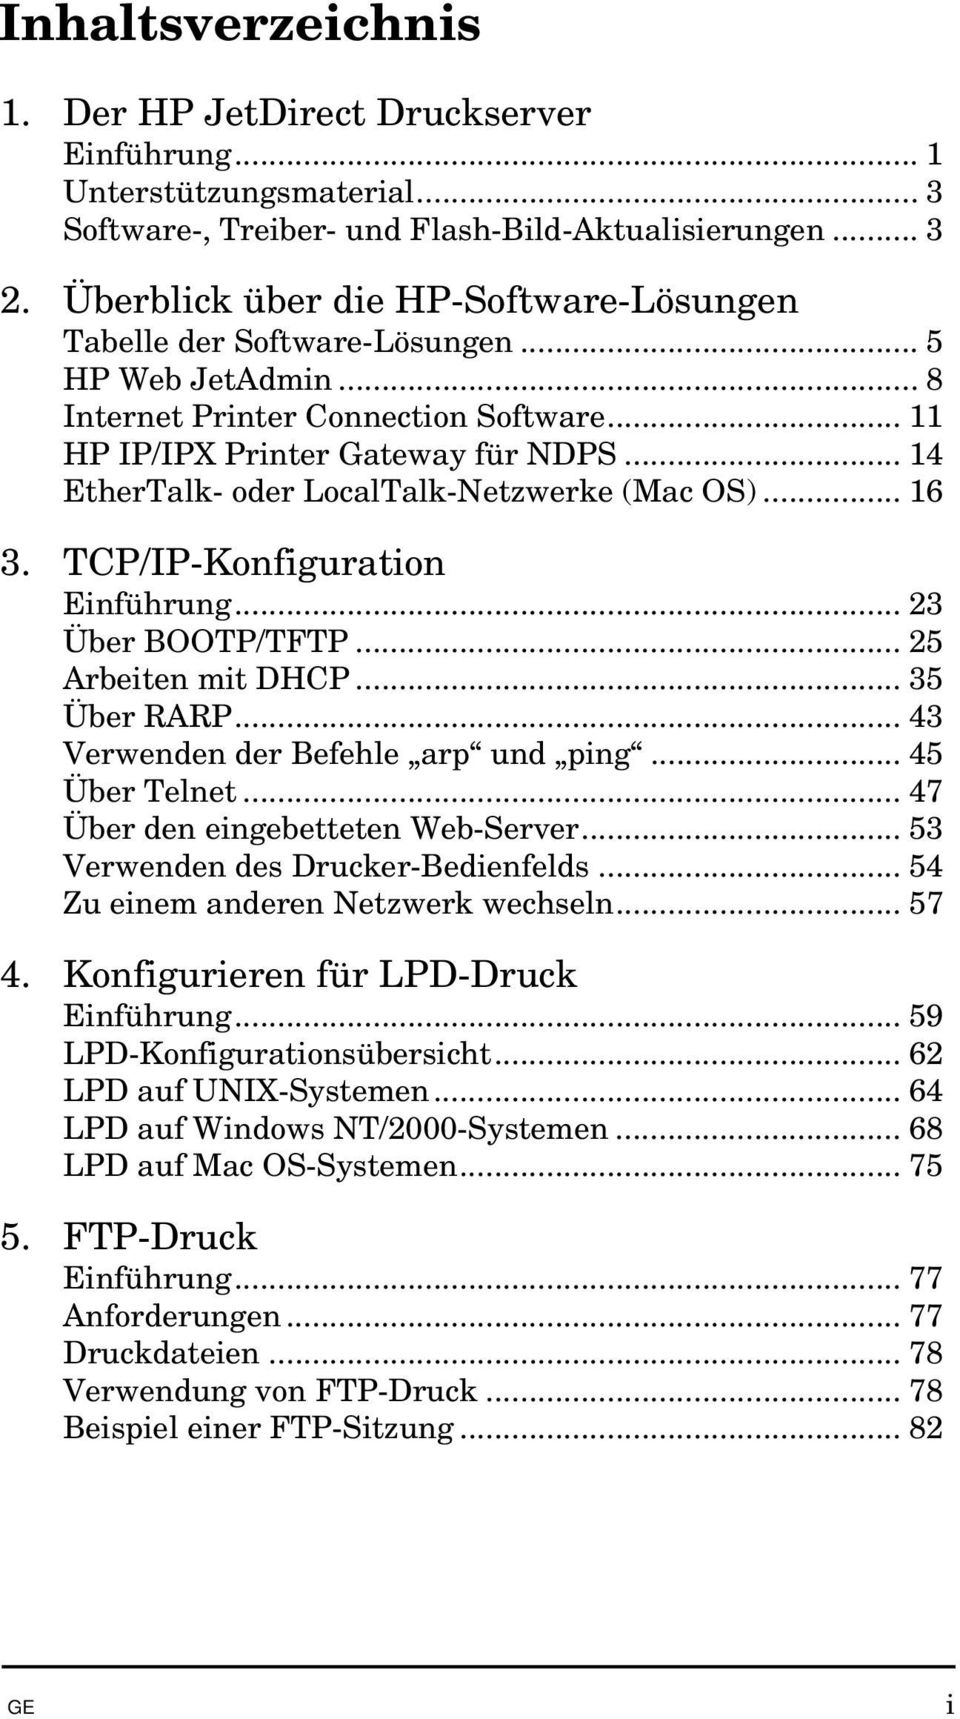 .. 14 EtherTalk- oder LocalTalk-Netzwerke (Mac OS)... 16 3. TCP/IP-Konfiguration Einführung... 23 Über BOOTP/TFTP... 25 Arbeiten mit DHCP... 35 Über RARP... 43 Verwenden der Befehle arp und ping.